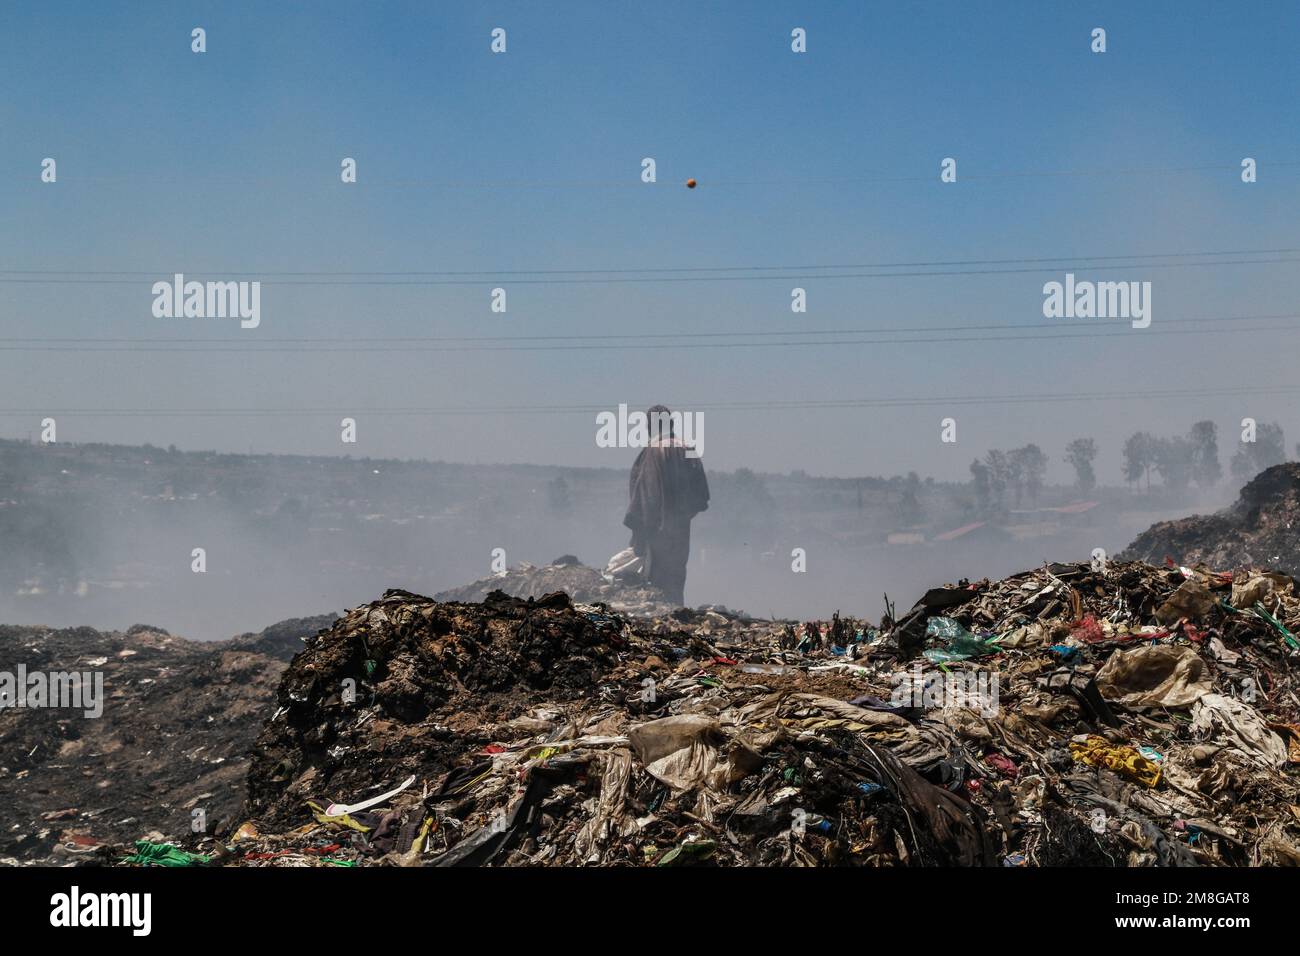 Ein Abfallsammler sammelt Abfälle, die in starkem Rauch wiederverwertet werden, indem er Müll auf dem Hauptlagerplatz von Nakuru verbrannt. Da Abfälle selten getrennt und stark mit allen Arten von Abfall vermischt werden, kann das Verbrennen potenziell giftige Dämpfe erzeugen, die ein Problem für die öffentliche Gesundheit darstellen und auch zum Klimawandel beitragen können. Gemeinden, die in der Nähe von Mülldeponien arbeiten und leben, wo Müll offen verbrannt wird, sind dem Risiko von Atemwegserkrankungen und Krebs ausgesetzt. Frauen, die diesen Dämpfen ausgesetzt sind, können unter reproduktiven Gesundheitsproblemen leiden. Stockfoto